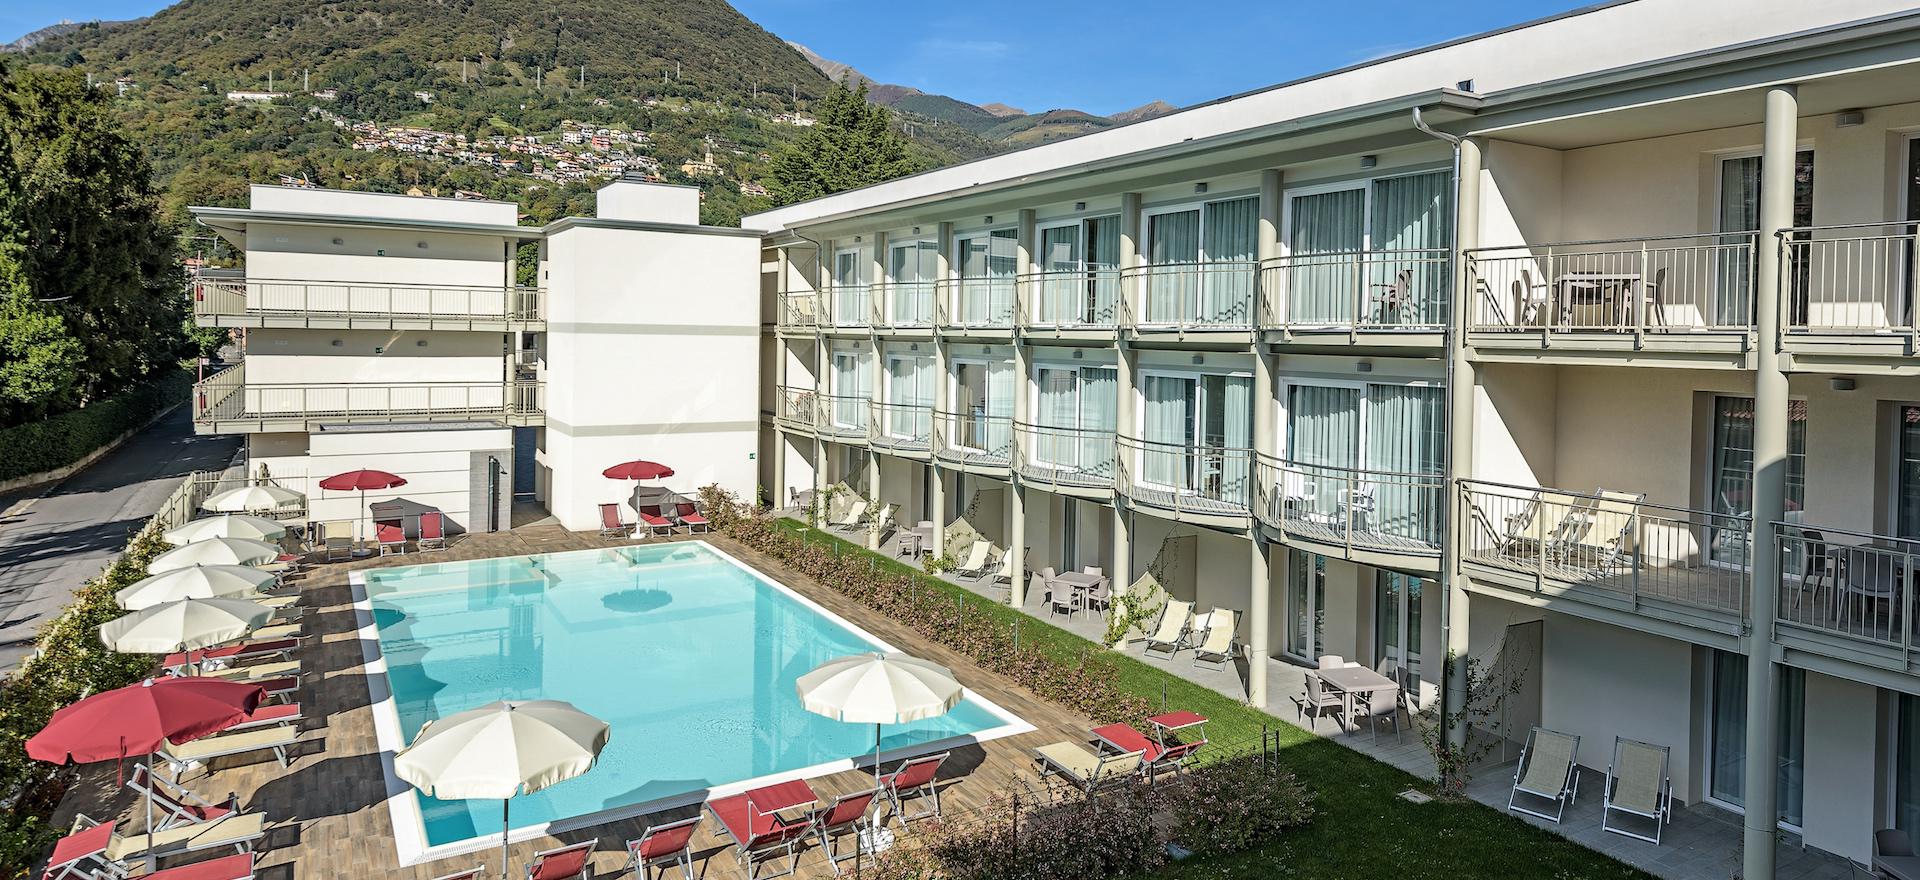 Agriturismo Lago di Como e lago di Garda Hotel vicino alle spiagge di ciottoli del Lago di Como